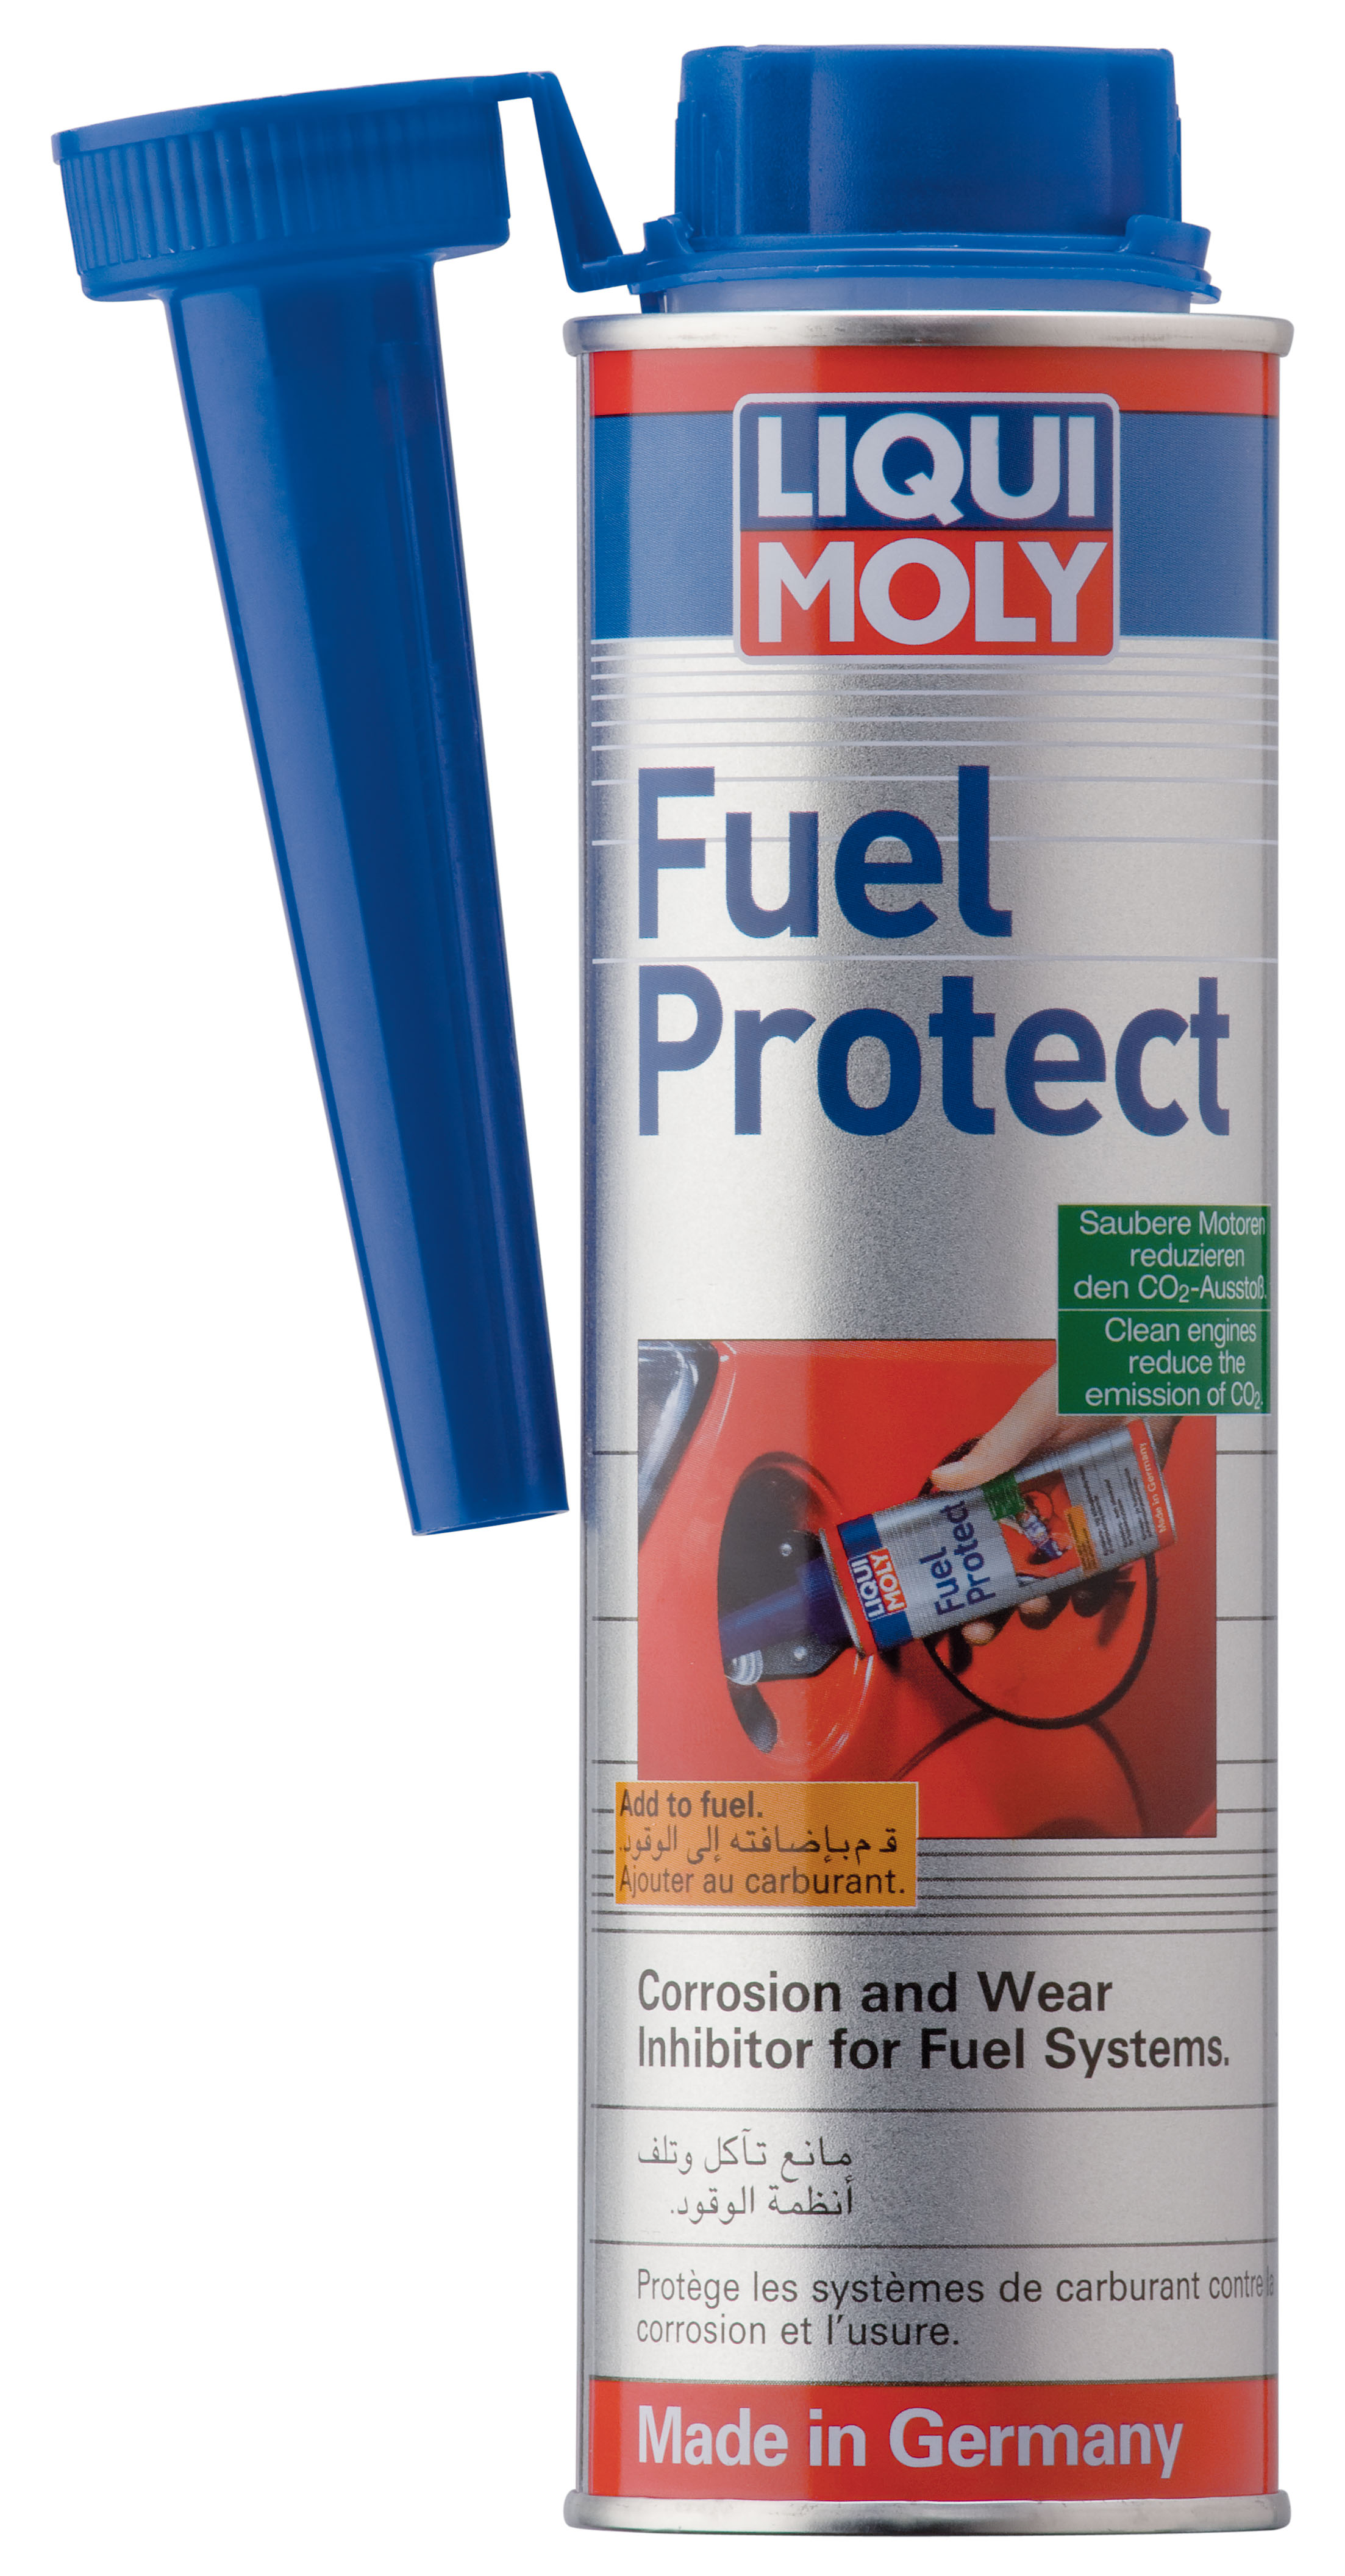 Осушитель - очиститель топлива Fuel Protect, 300мл - Liqui Moly 2530